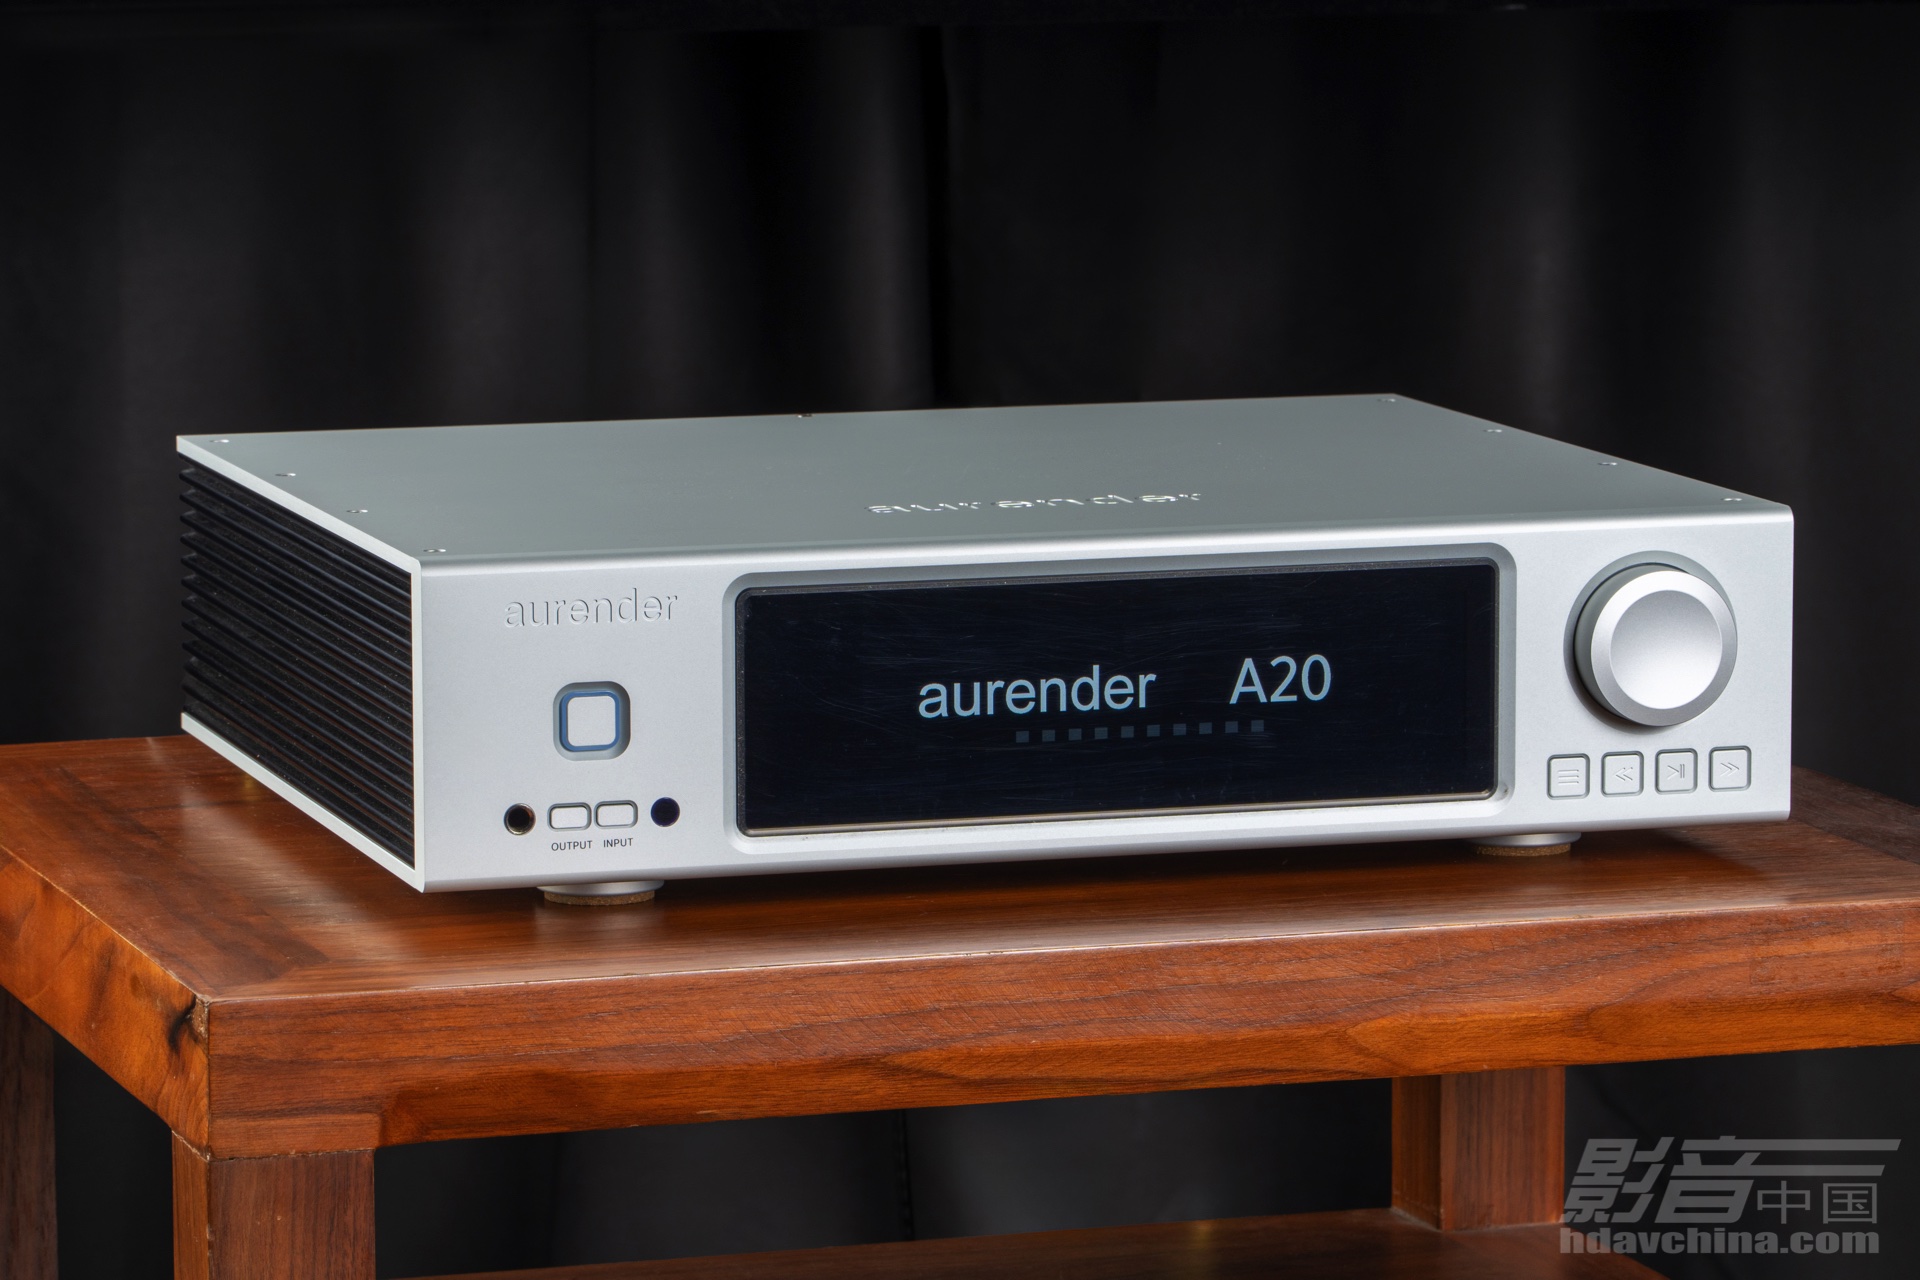 【鉴赏】Aurender（欧然德）A20数字播放器：初见不识真面目，开声即被俘获